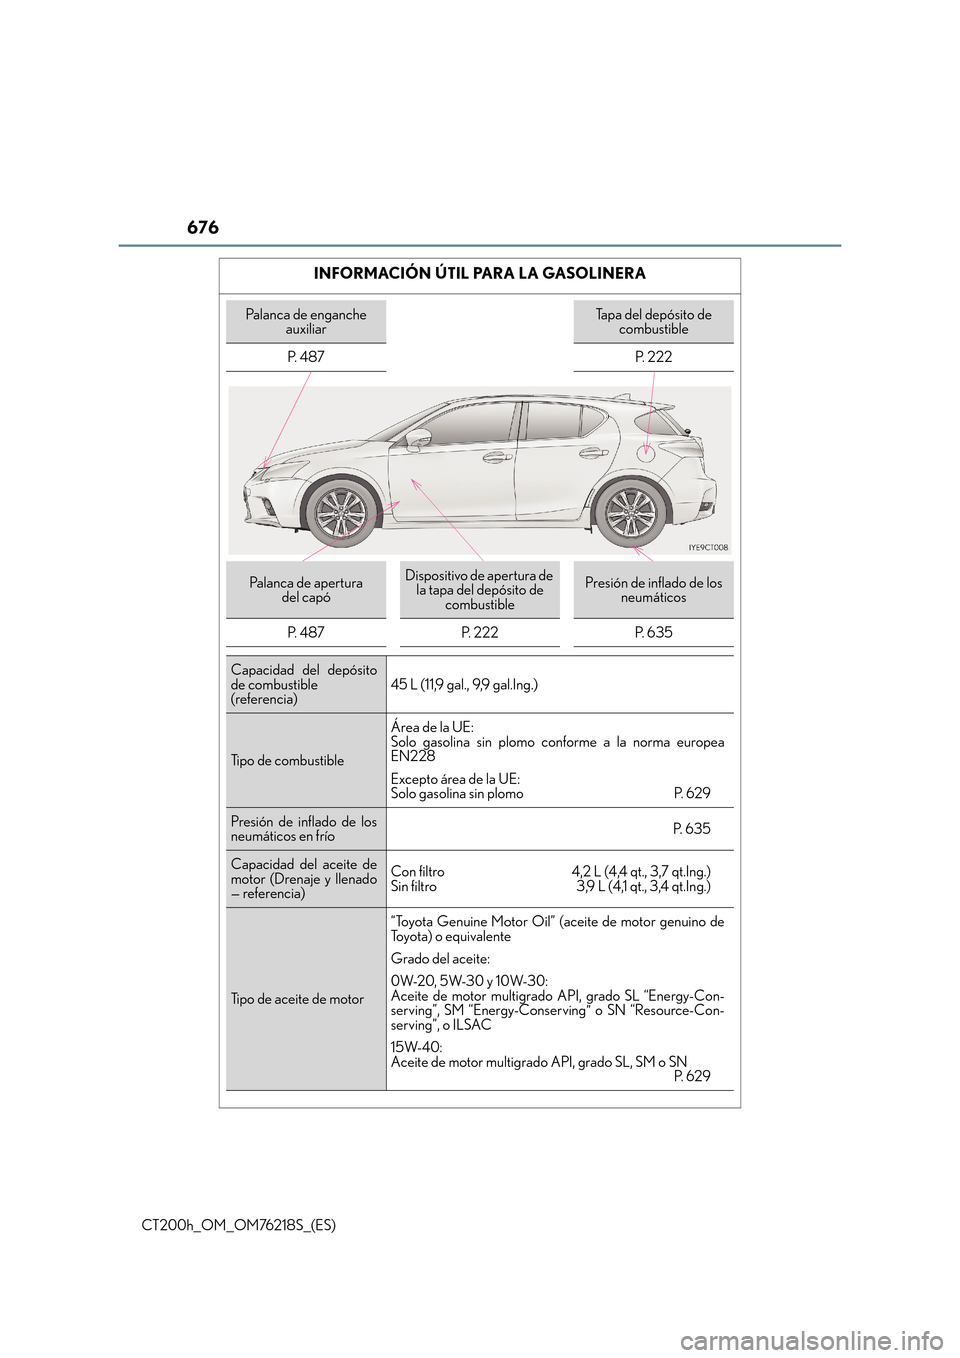 Lexus CT200h 2017  Manual del propietario (in Spanish) 676
CT200h_OM_OM76218S_(ES)
INFORMACIÓN ÚTIL PARA LA GASOLINERA
Palanca de enganche auxiliarTapa del depósito de combustible
P.  4 8 7 P.  2 2 2
Palanca de apertura  del capóDispositivo de apertur